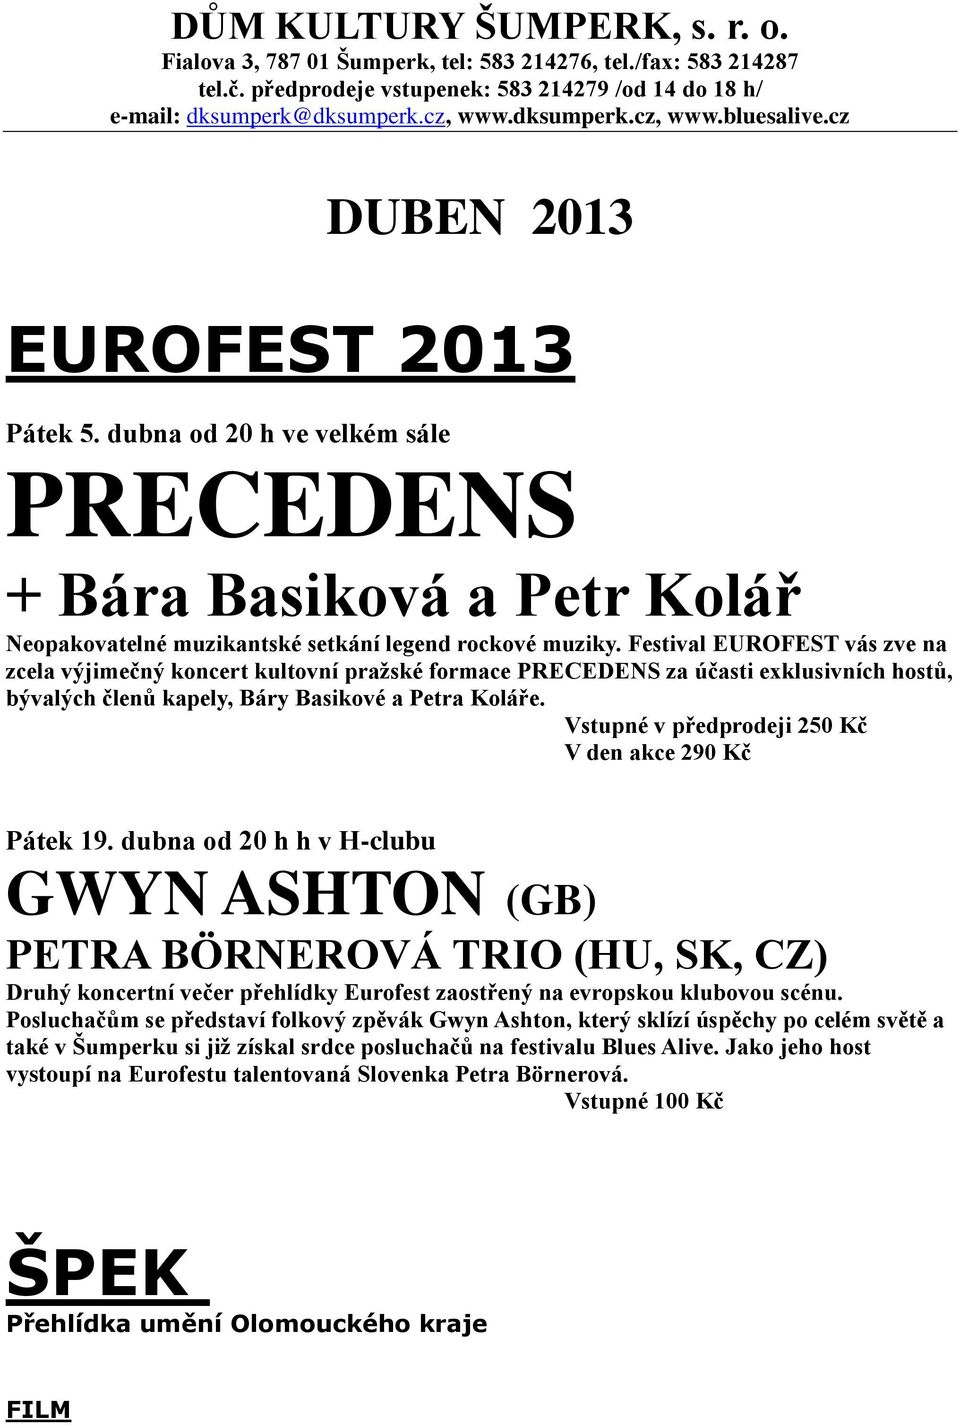 Festival EUROFEST vás zve na zcela výjimečný koncert kultovní pražské formace PRECEDENS za účasti exklusivních hostů, bývalých členů kapely, Báry Basikové a Petra Koláře.